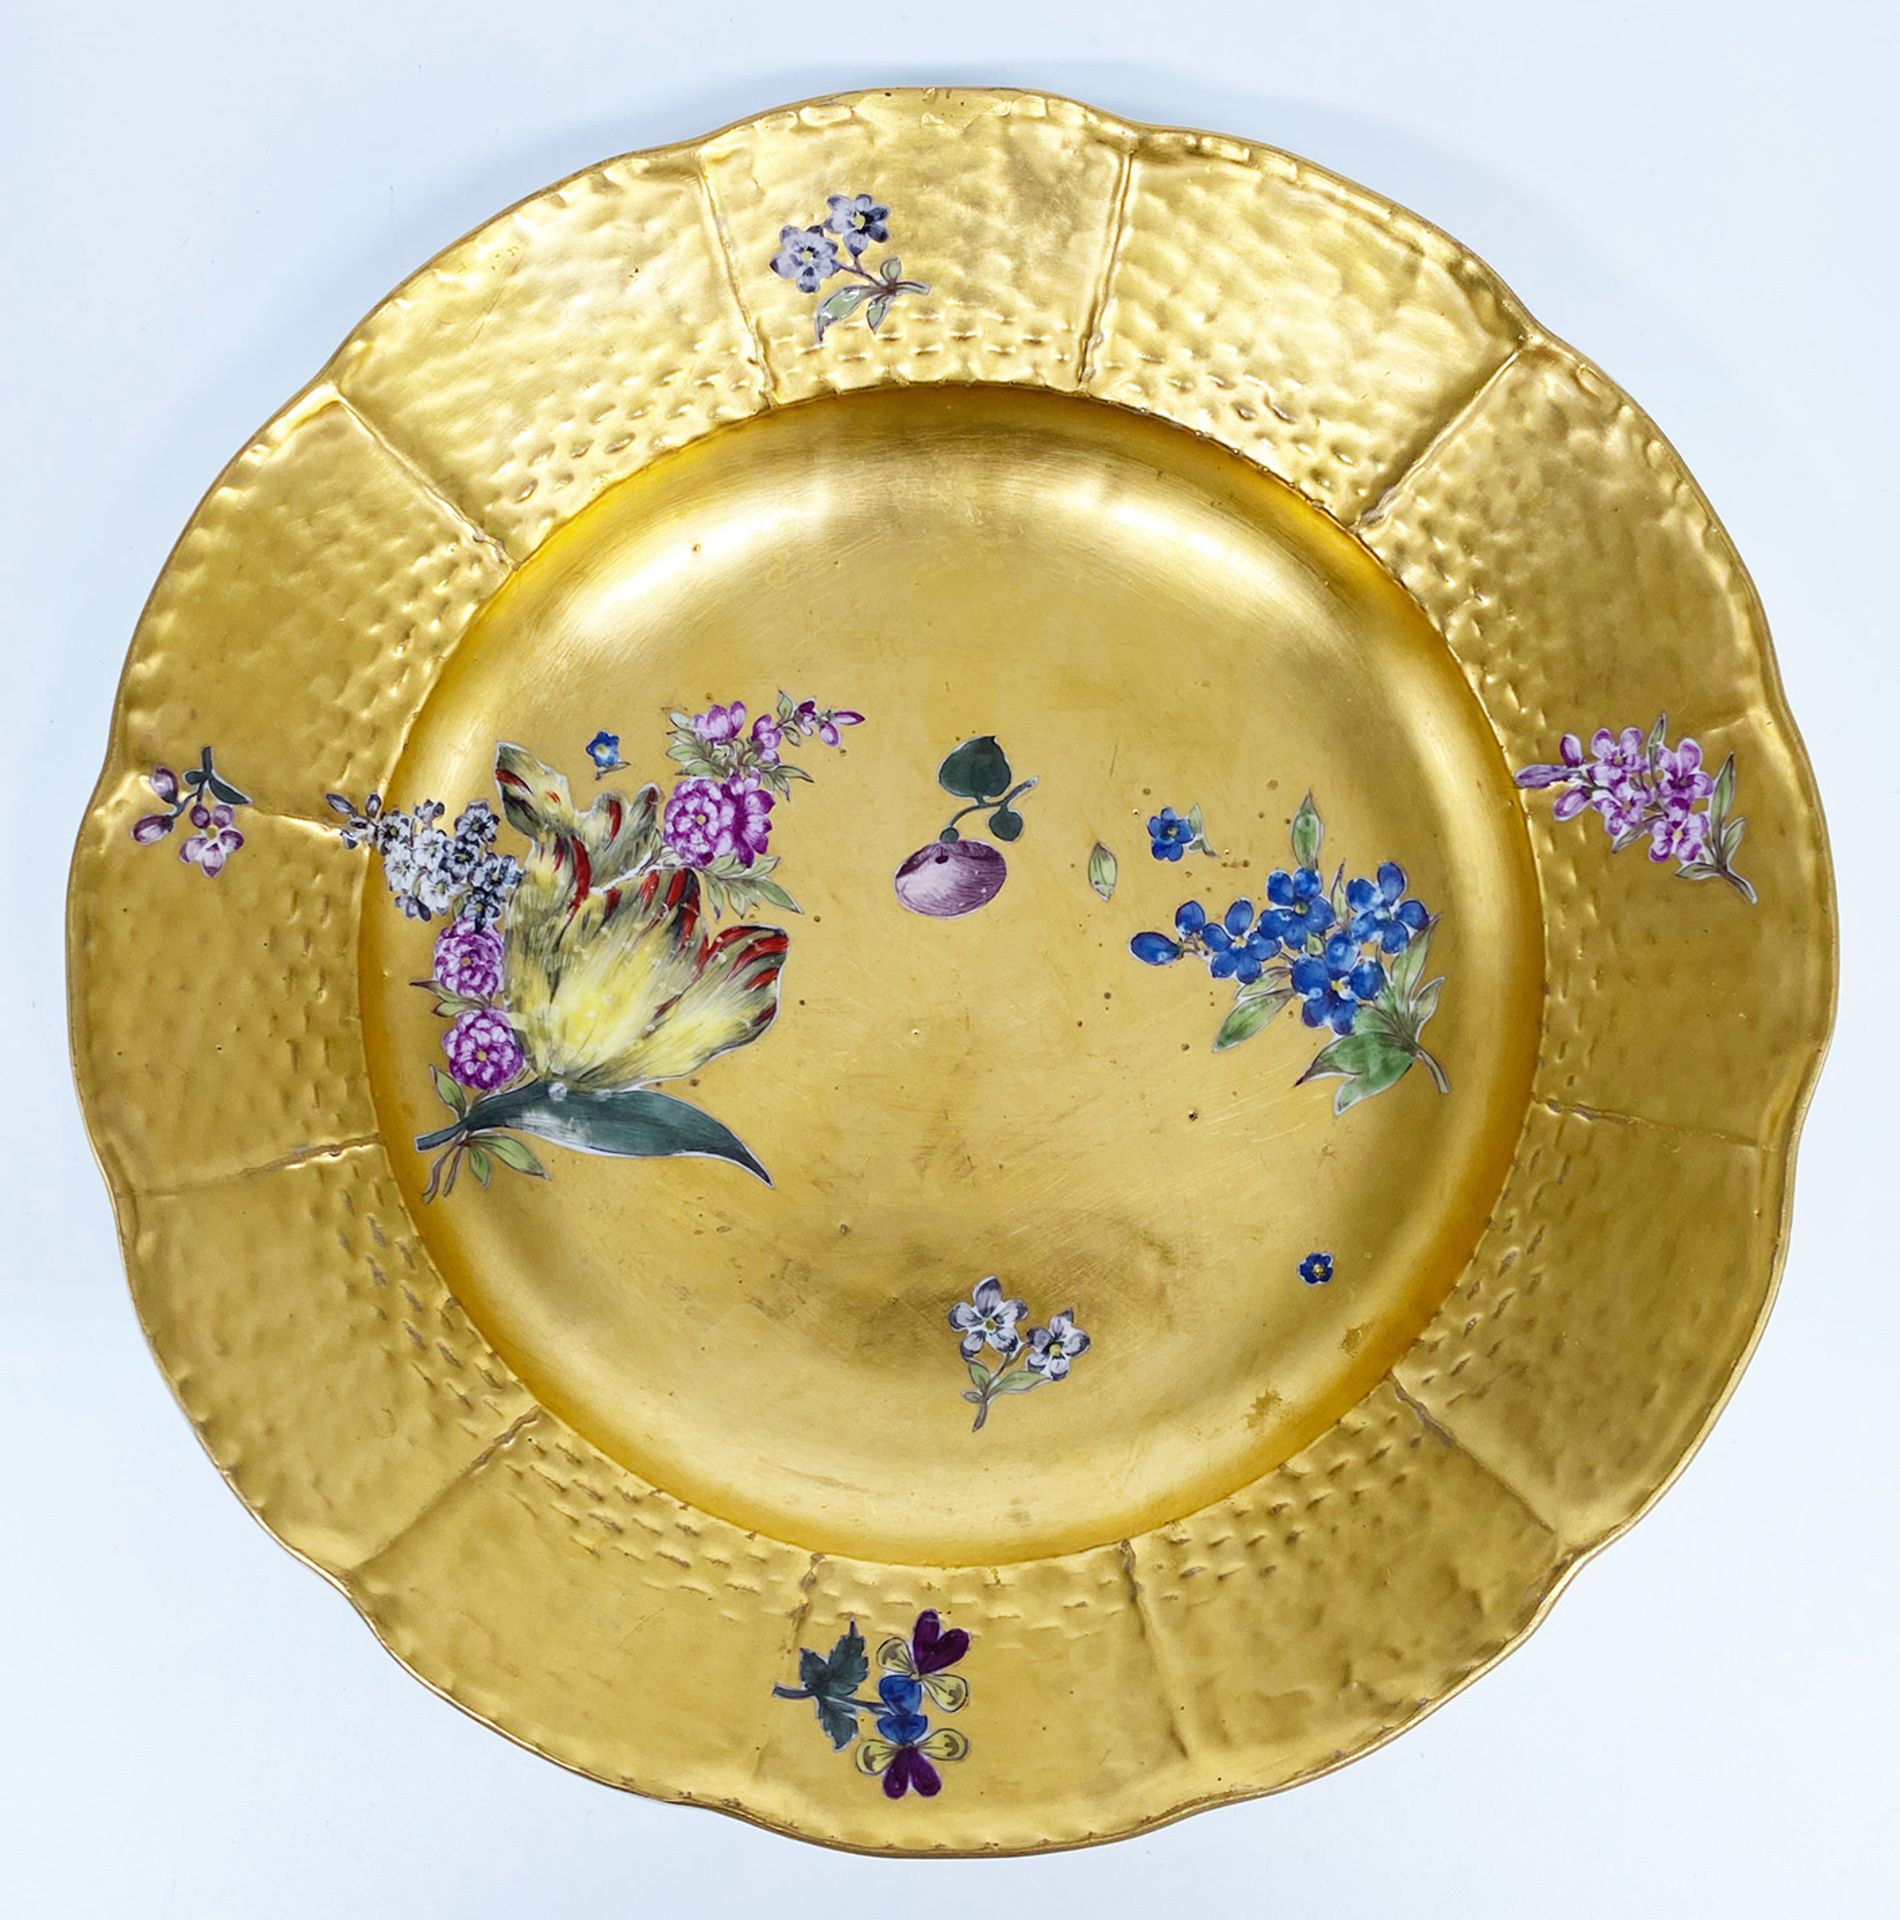 Meissen, Teller mit Goldfond und bunten Blumen, Mitte 18. Jh., Schwertermarke Meißen, D 22,5 cm,